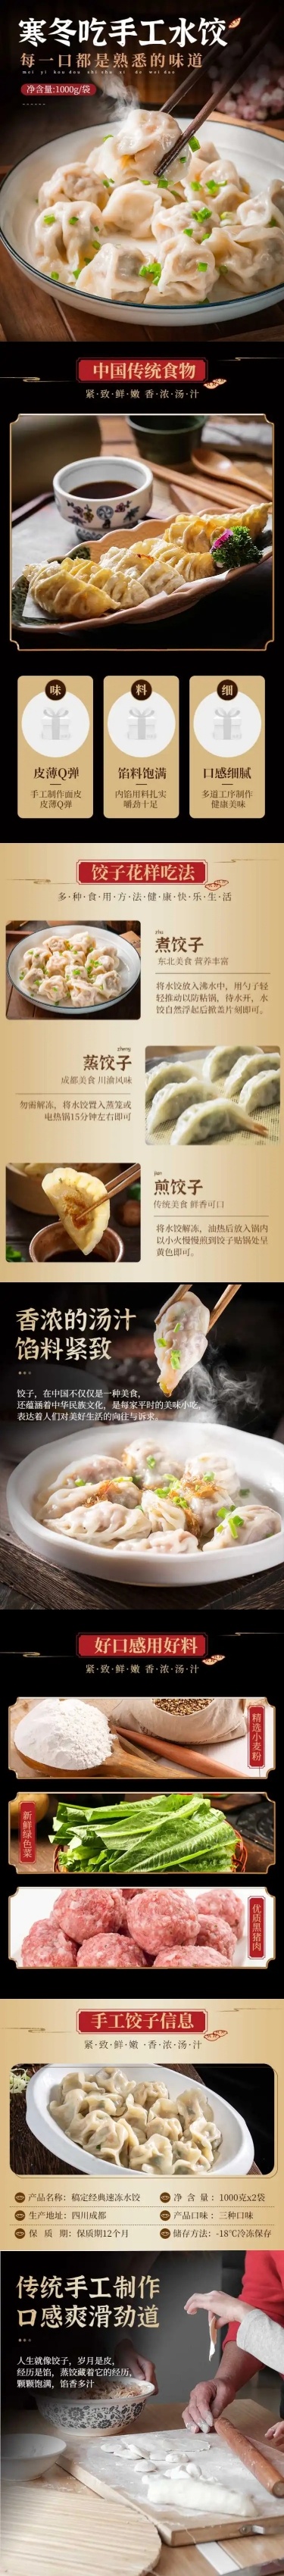 食品方便速食饺子详情页